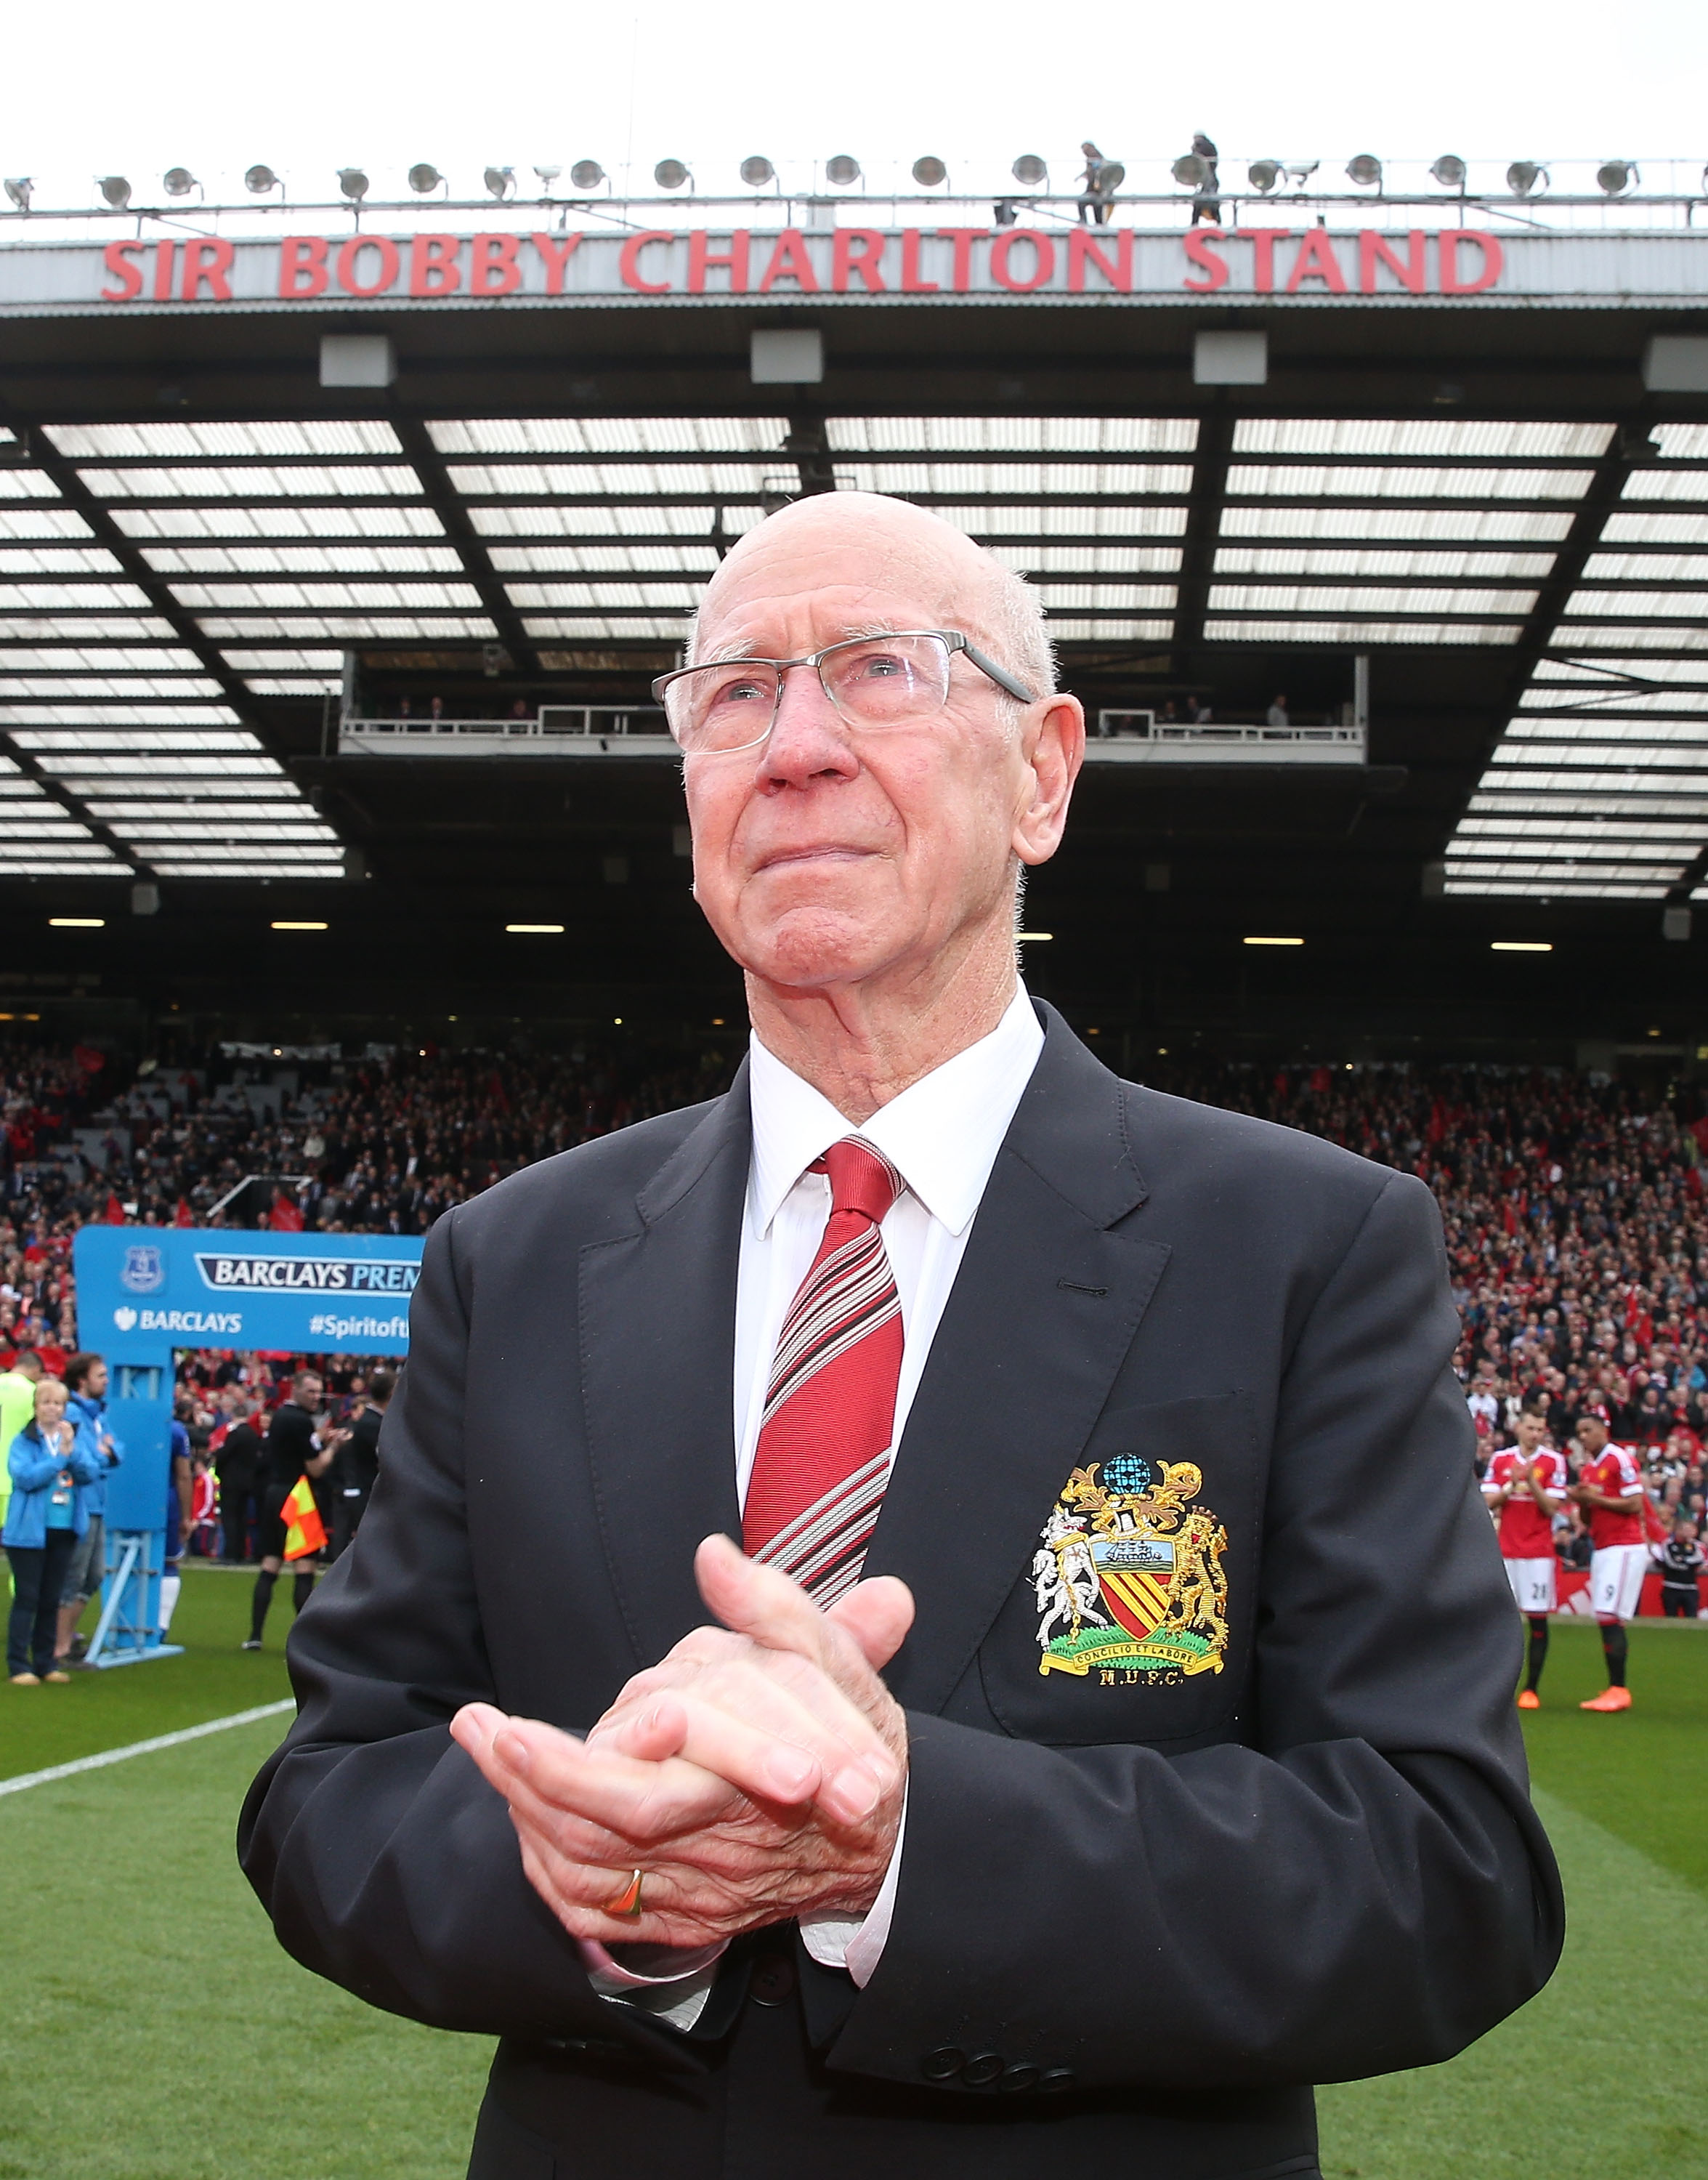 Sir Bobby Charlton verstarb im Alter von 86 Jahren an den Folgen einer Demenzerkrankung